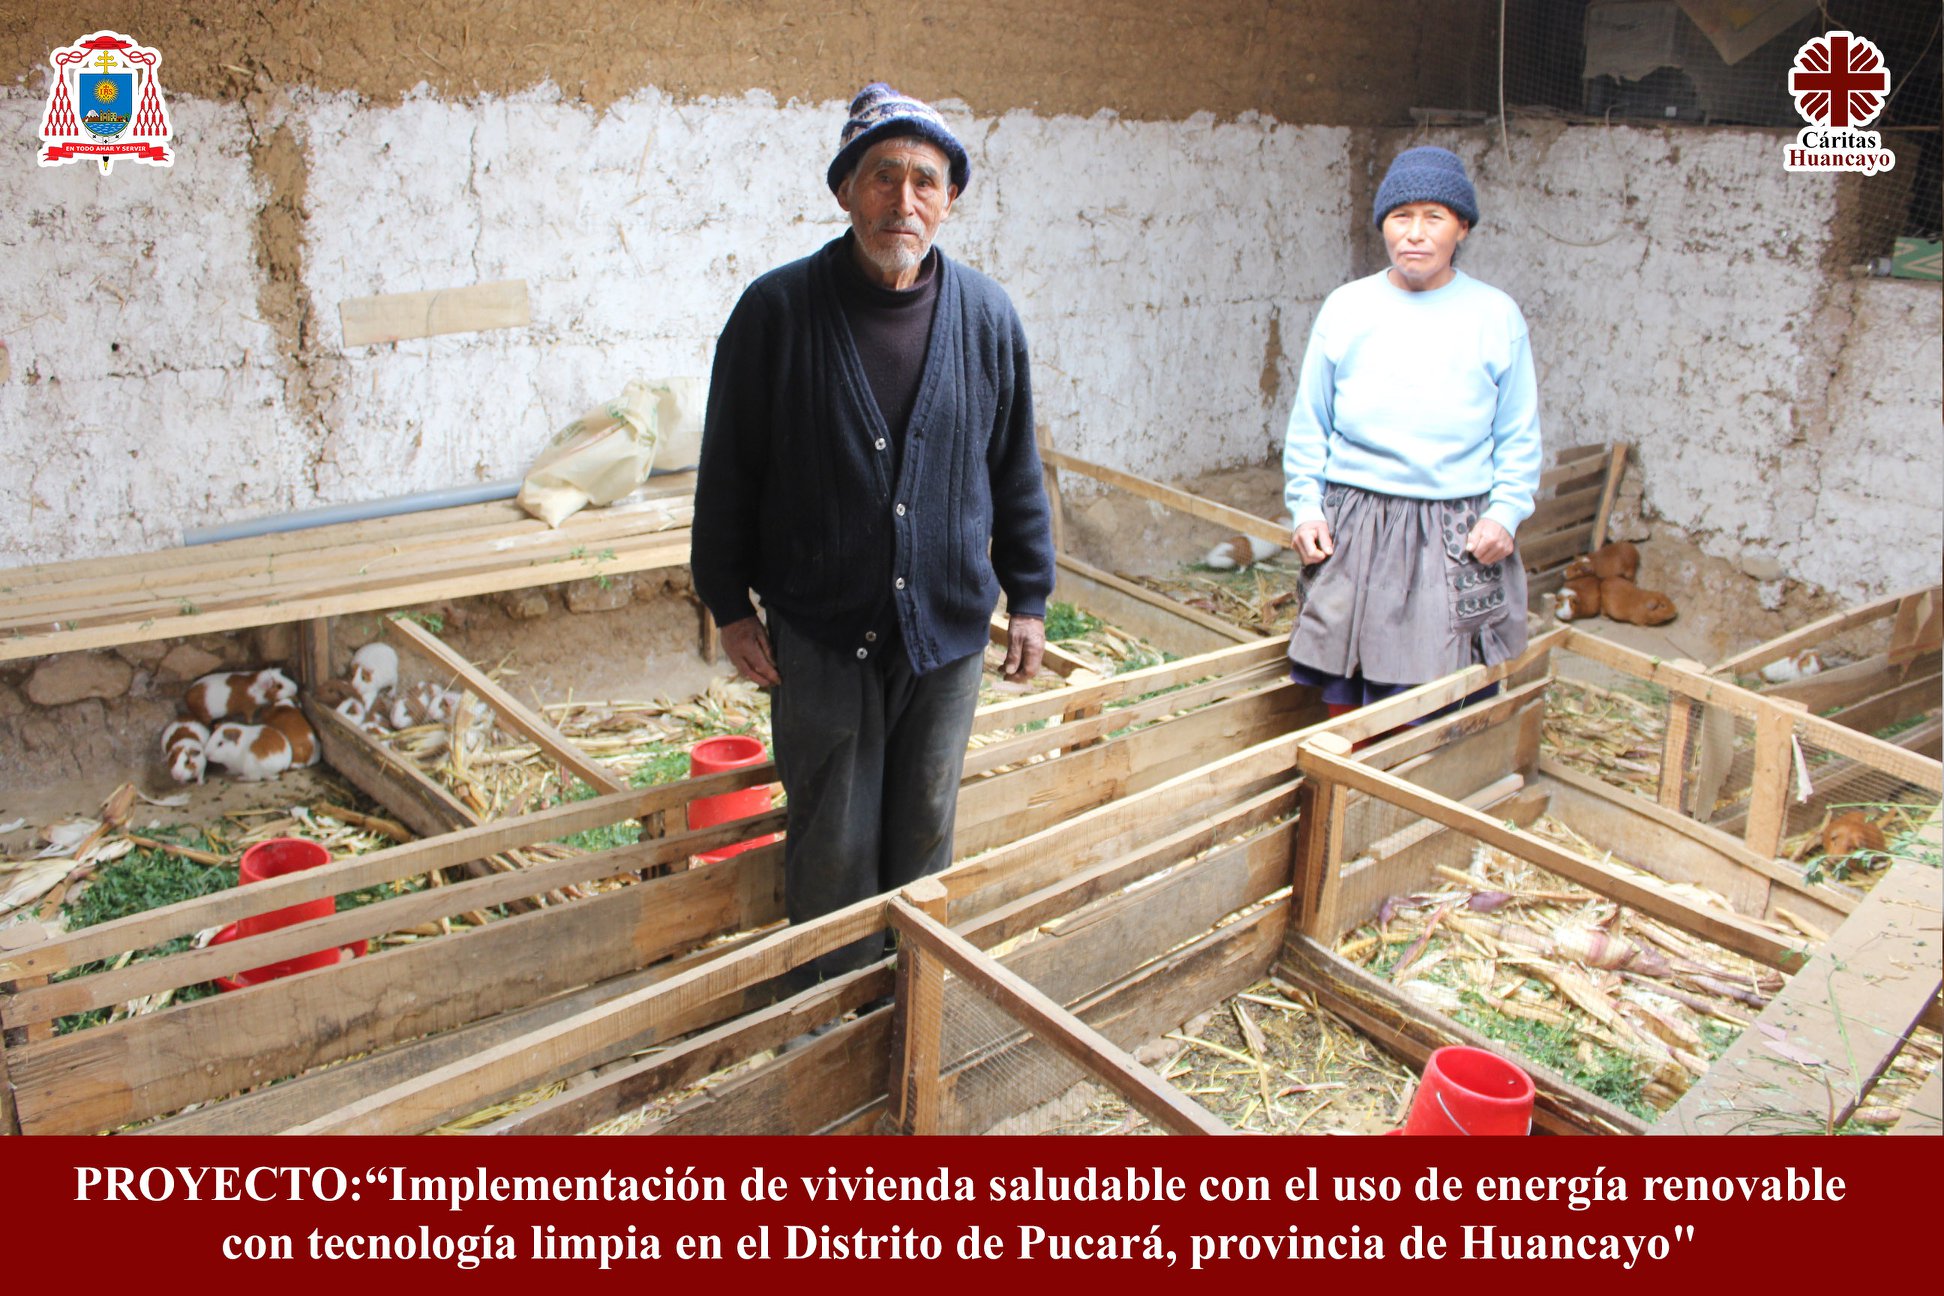 Implementación de vivienda saludable con el uso de energía renovable con tecnología limpia en el Distrito de Pucará, Provincia de Huancayo